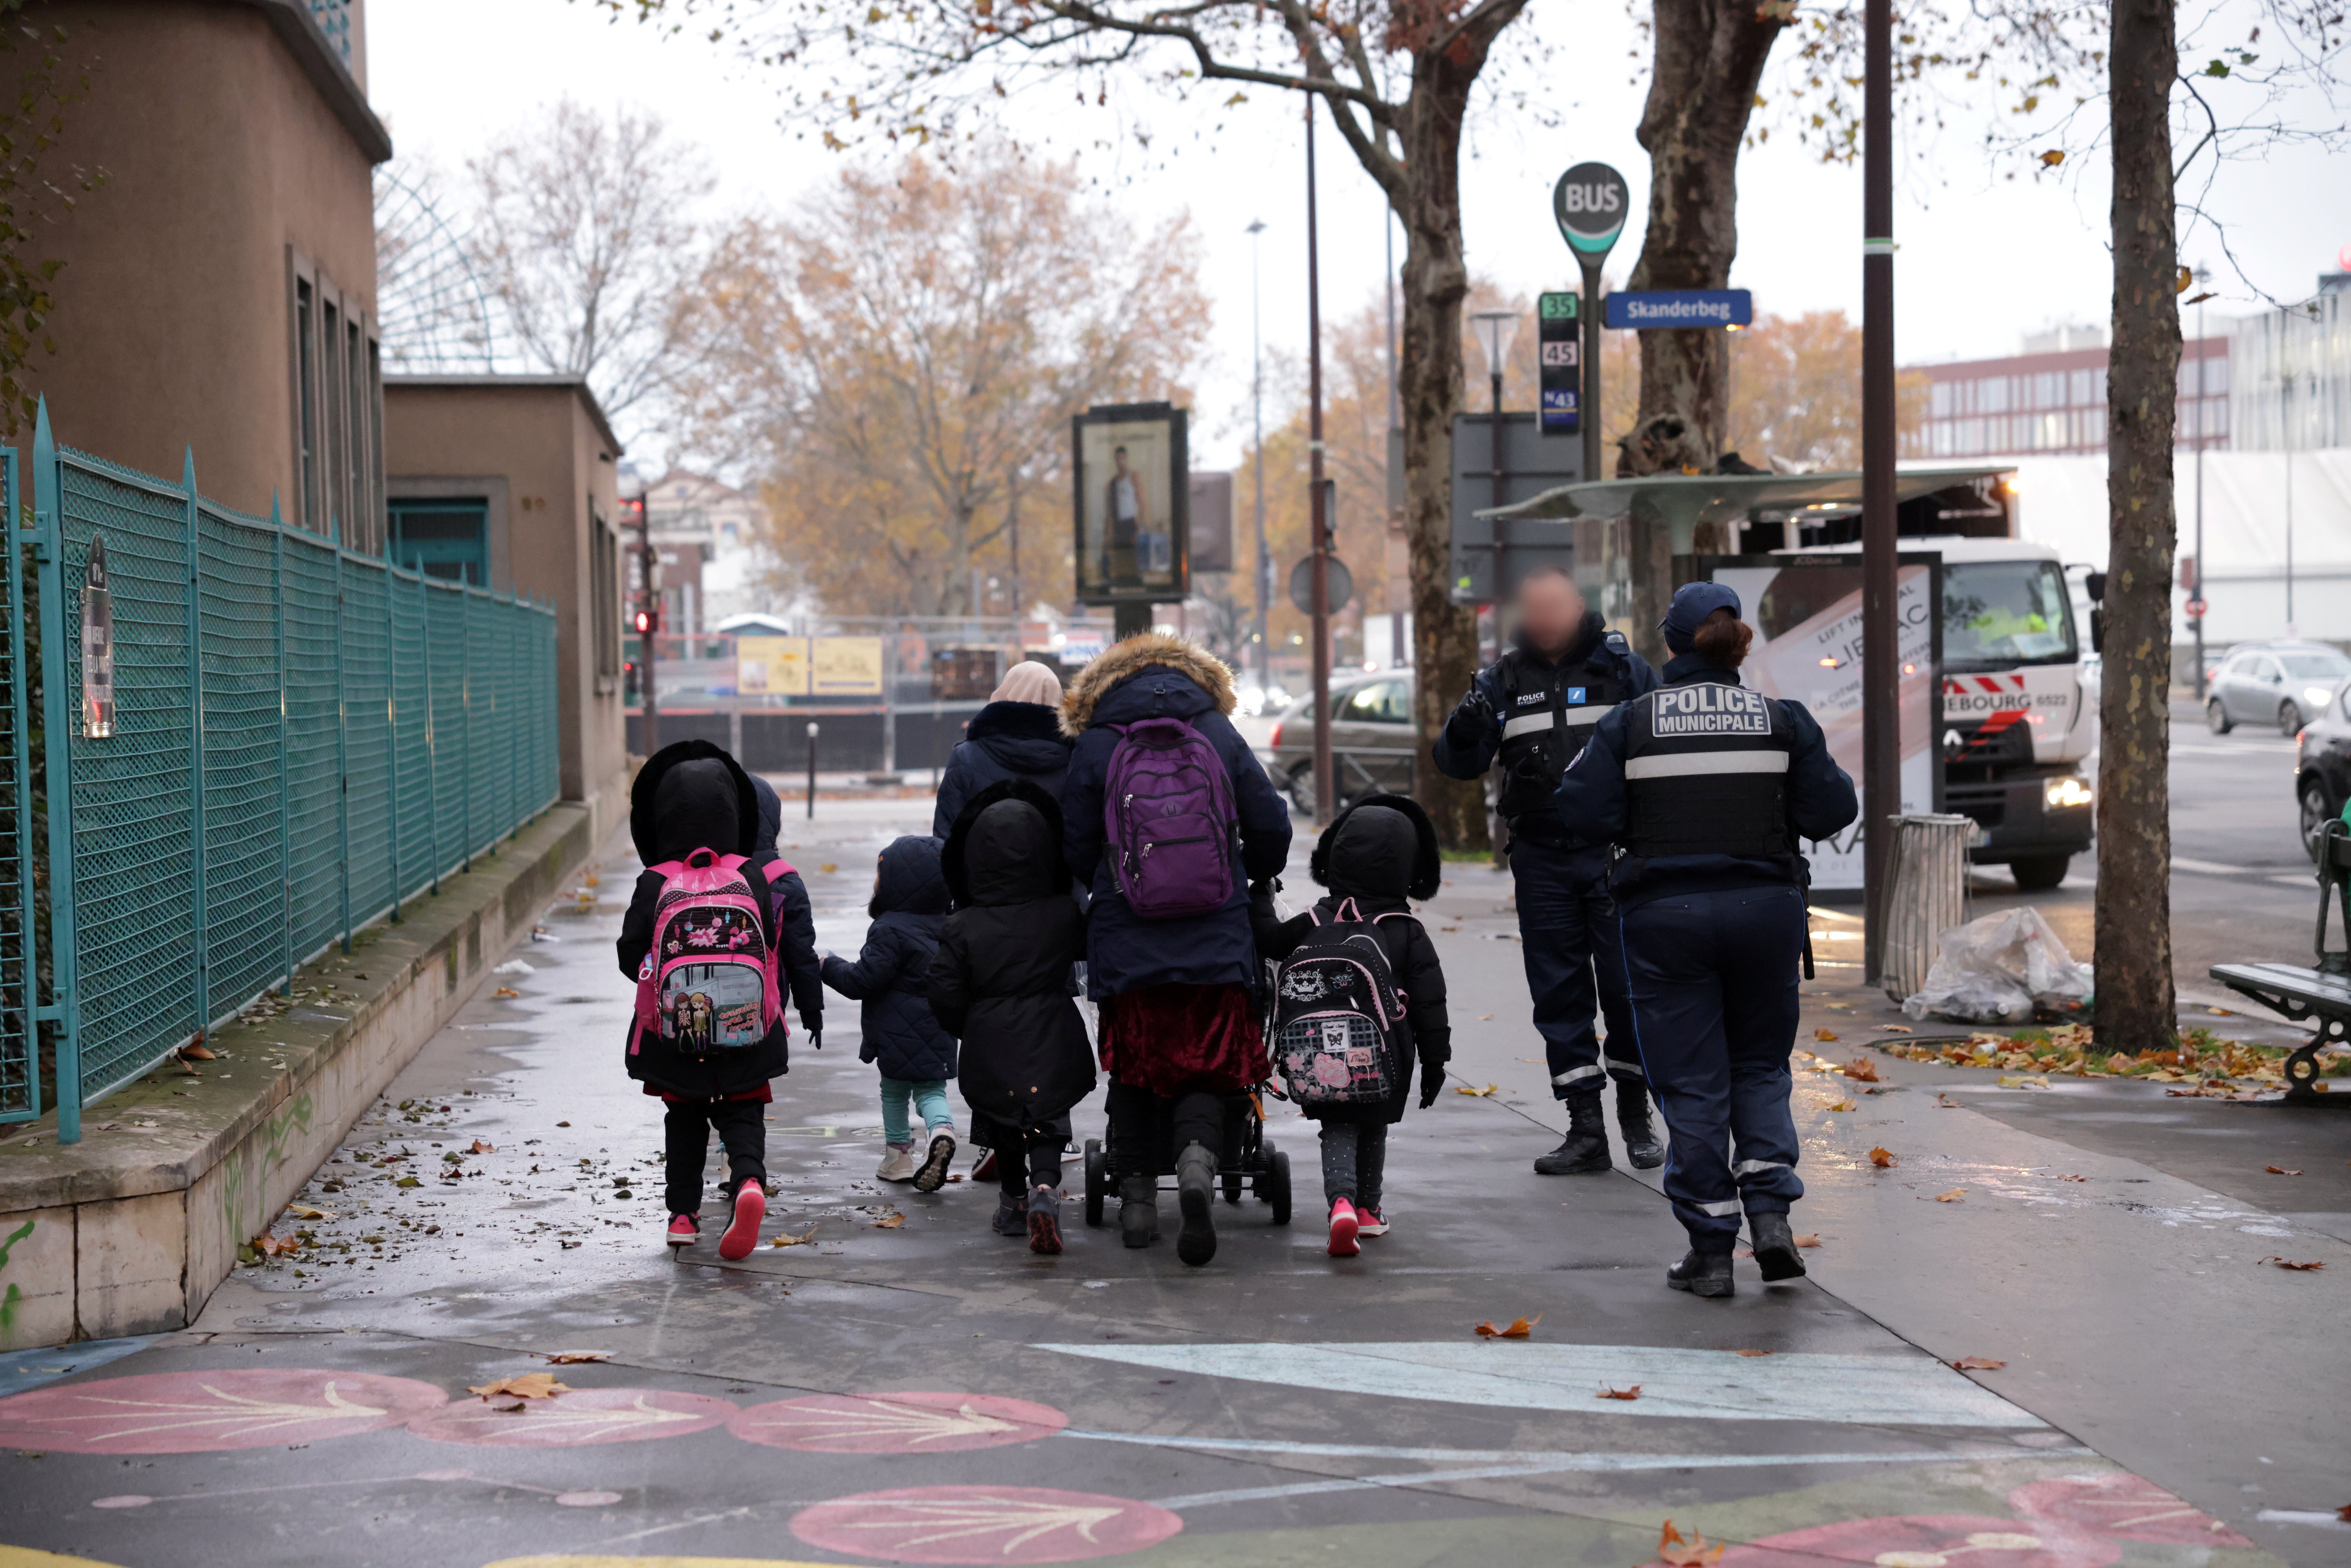 Des policiers municipaux escortent les familles sur le chemin de l'école et jusqu'à leur domicile pour sécuriser leur parcours, fréquenté par des toxicomanes. LP/Olivier Arandel